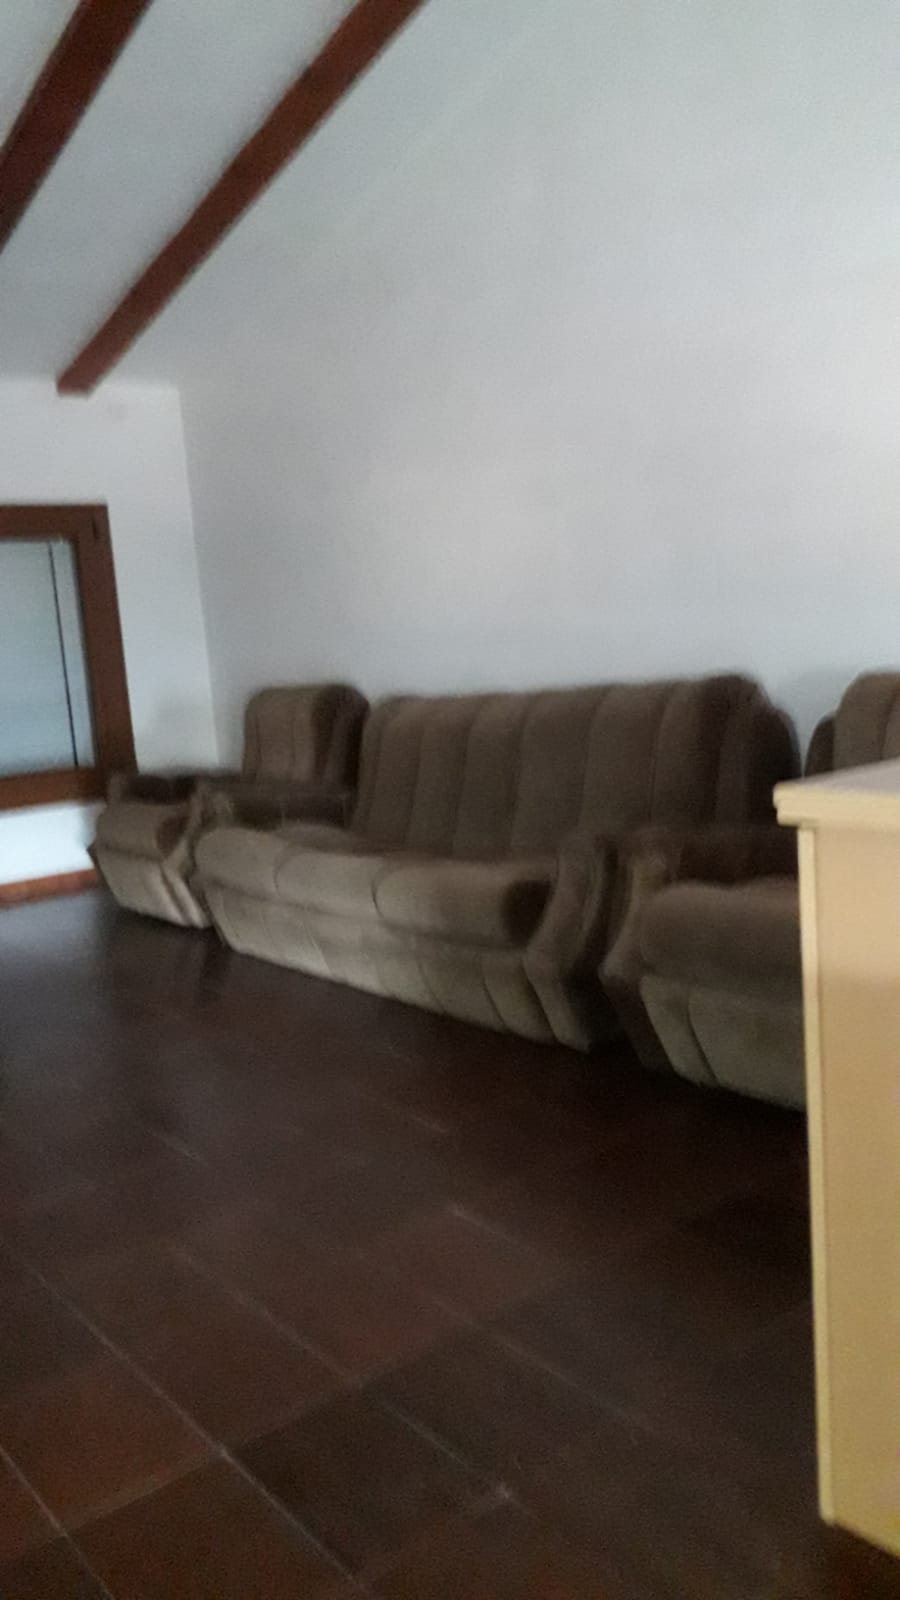 Recogida de muebles en Barberà de la Conca | ¡Despeje su hogar y recupere su tranquilidad!